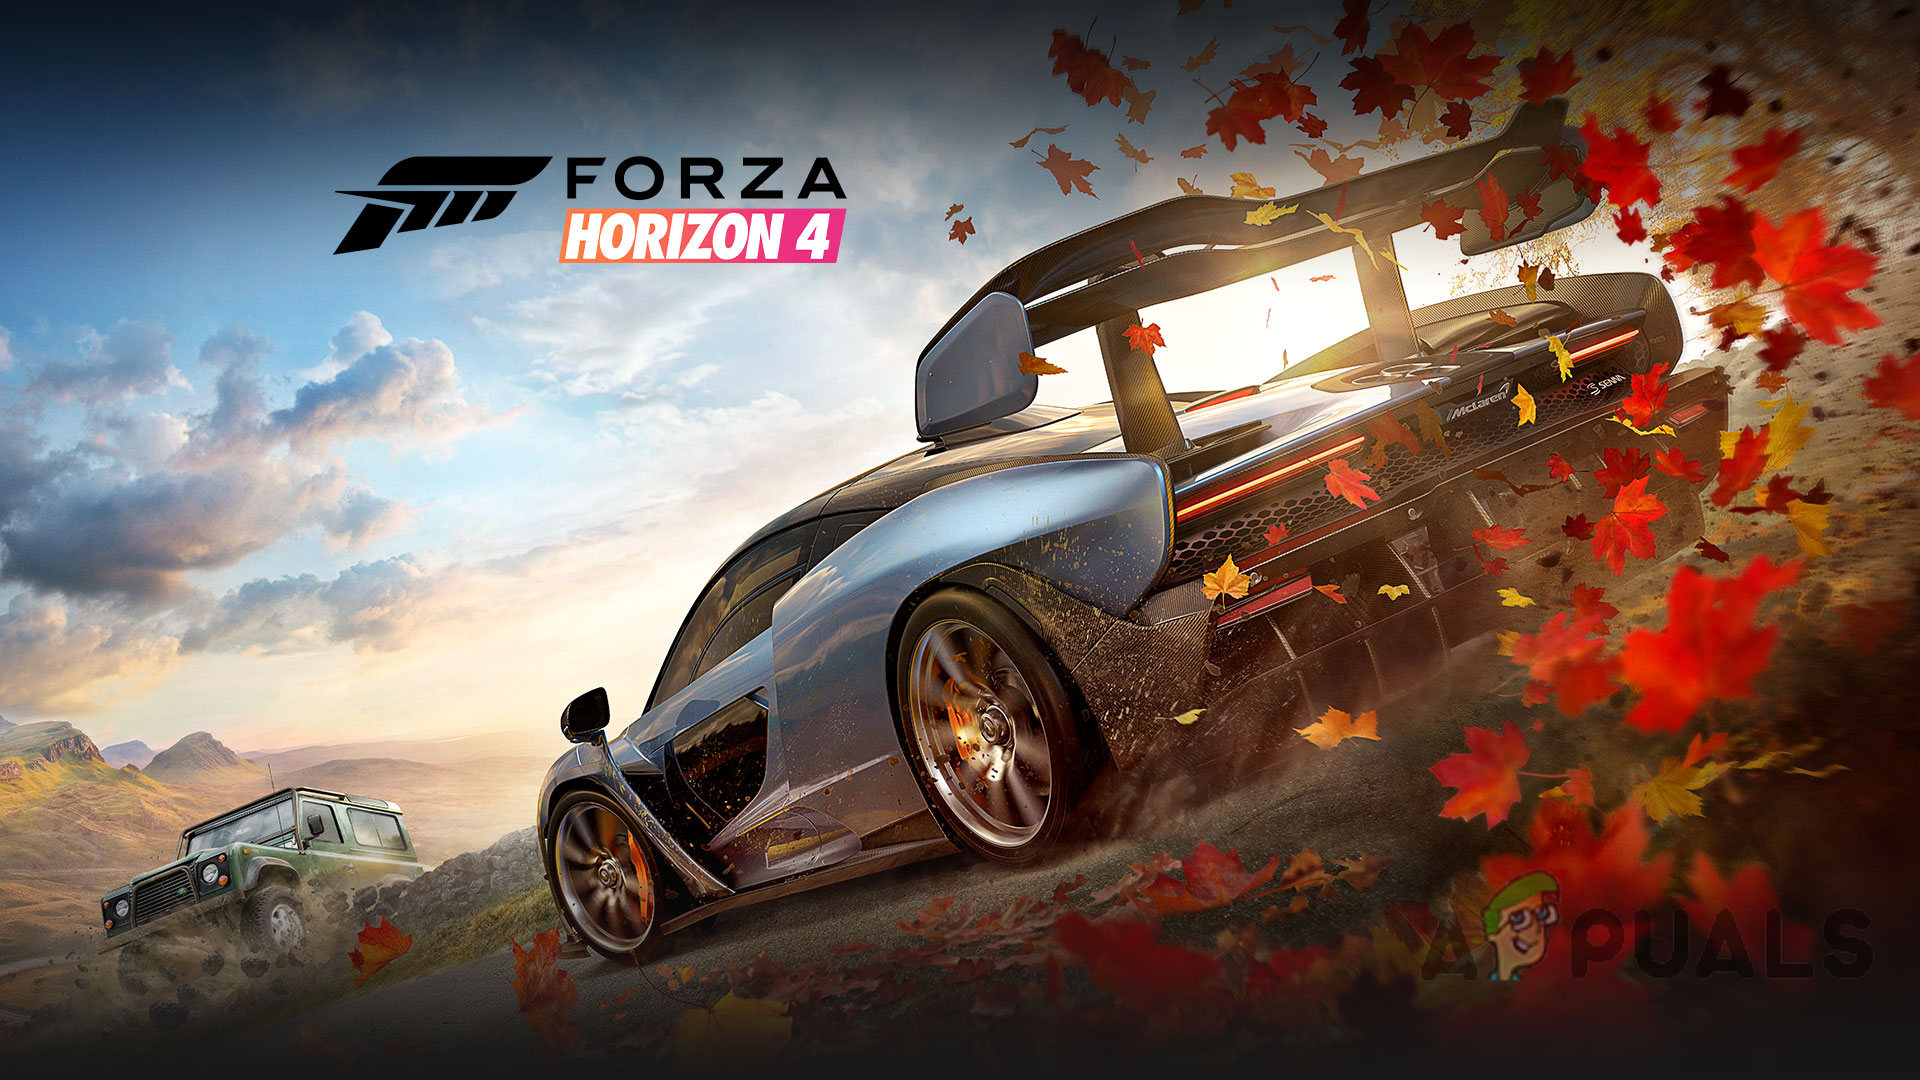 Como consertar o Forza Horizon 4 Game Crash no Windows 10?